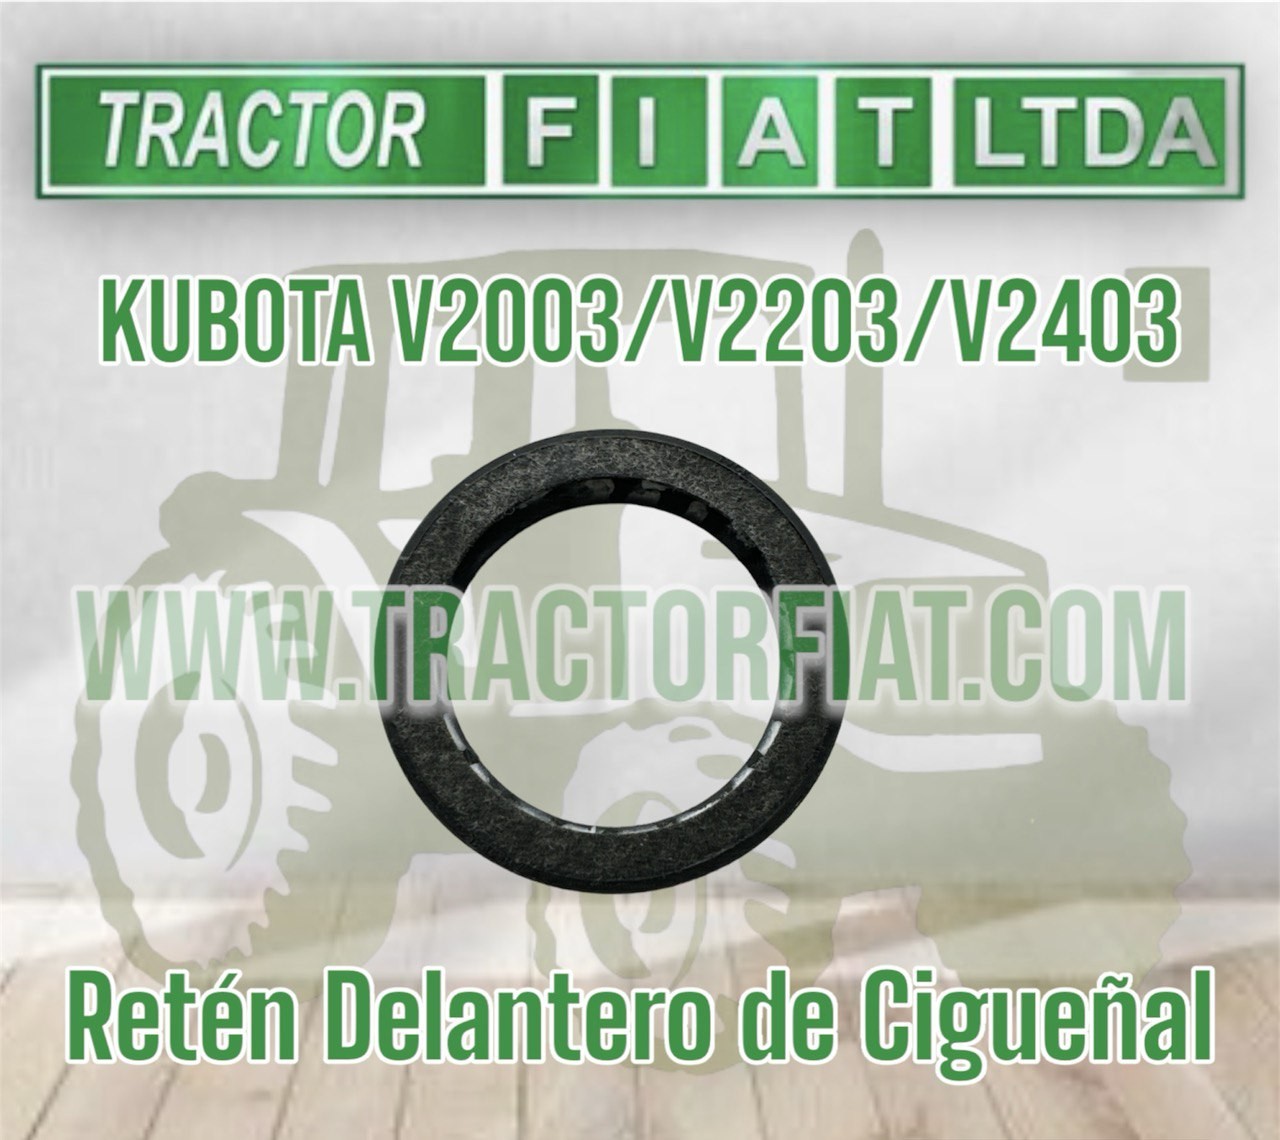 RETENEDOR DELANTERO CIGÜEÑAL -MOTOR KUBOTA V2003/V2203/V2403